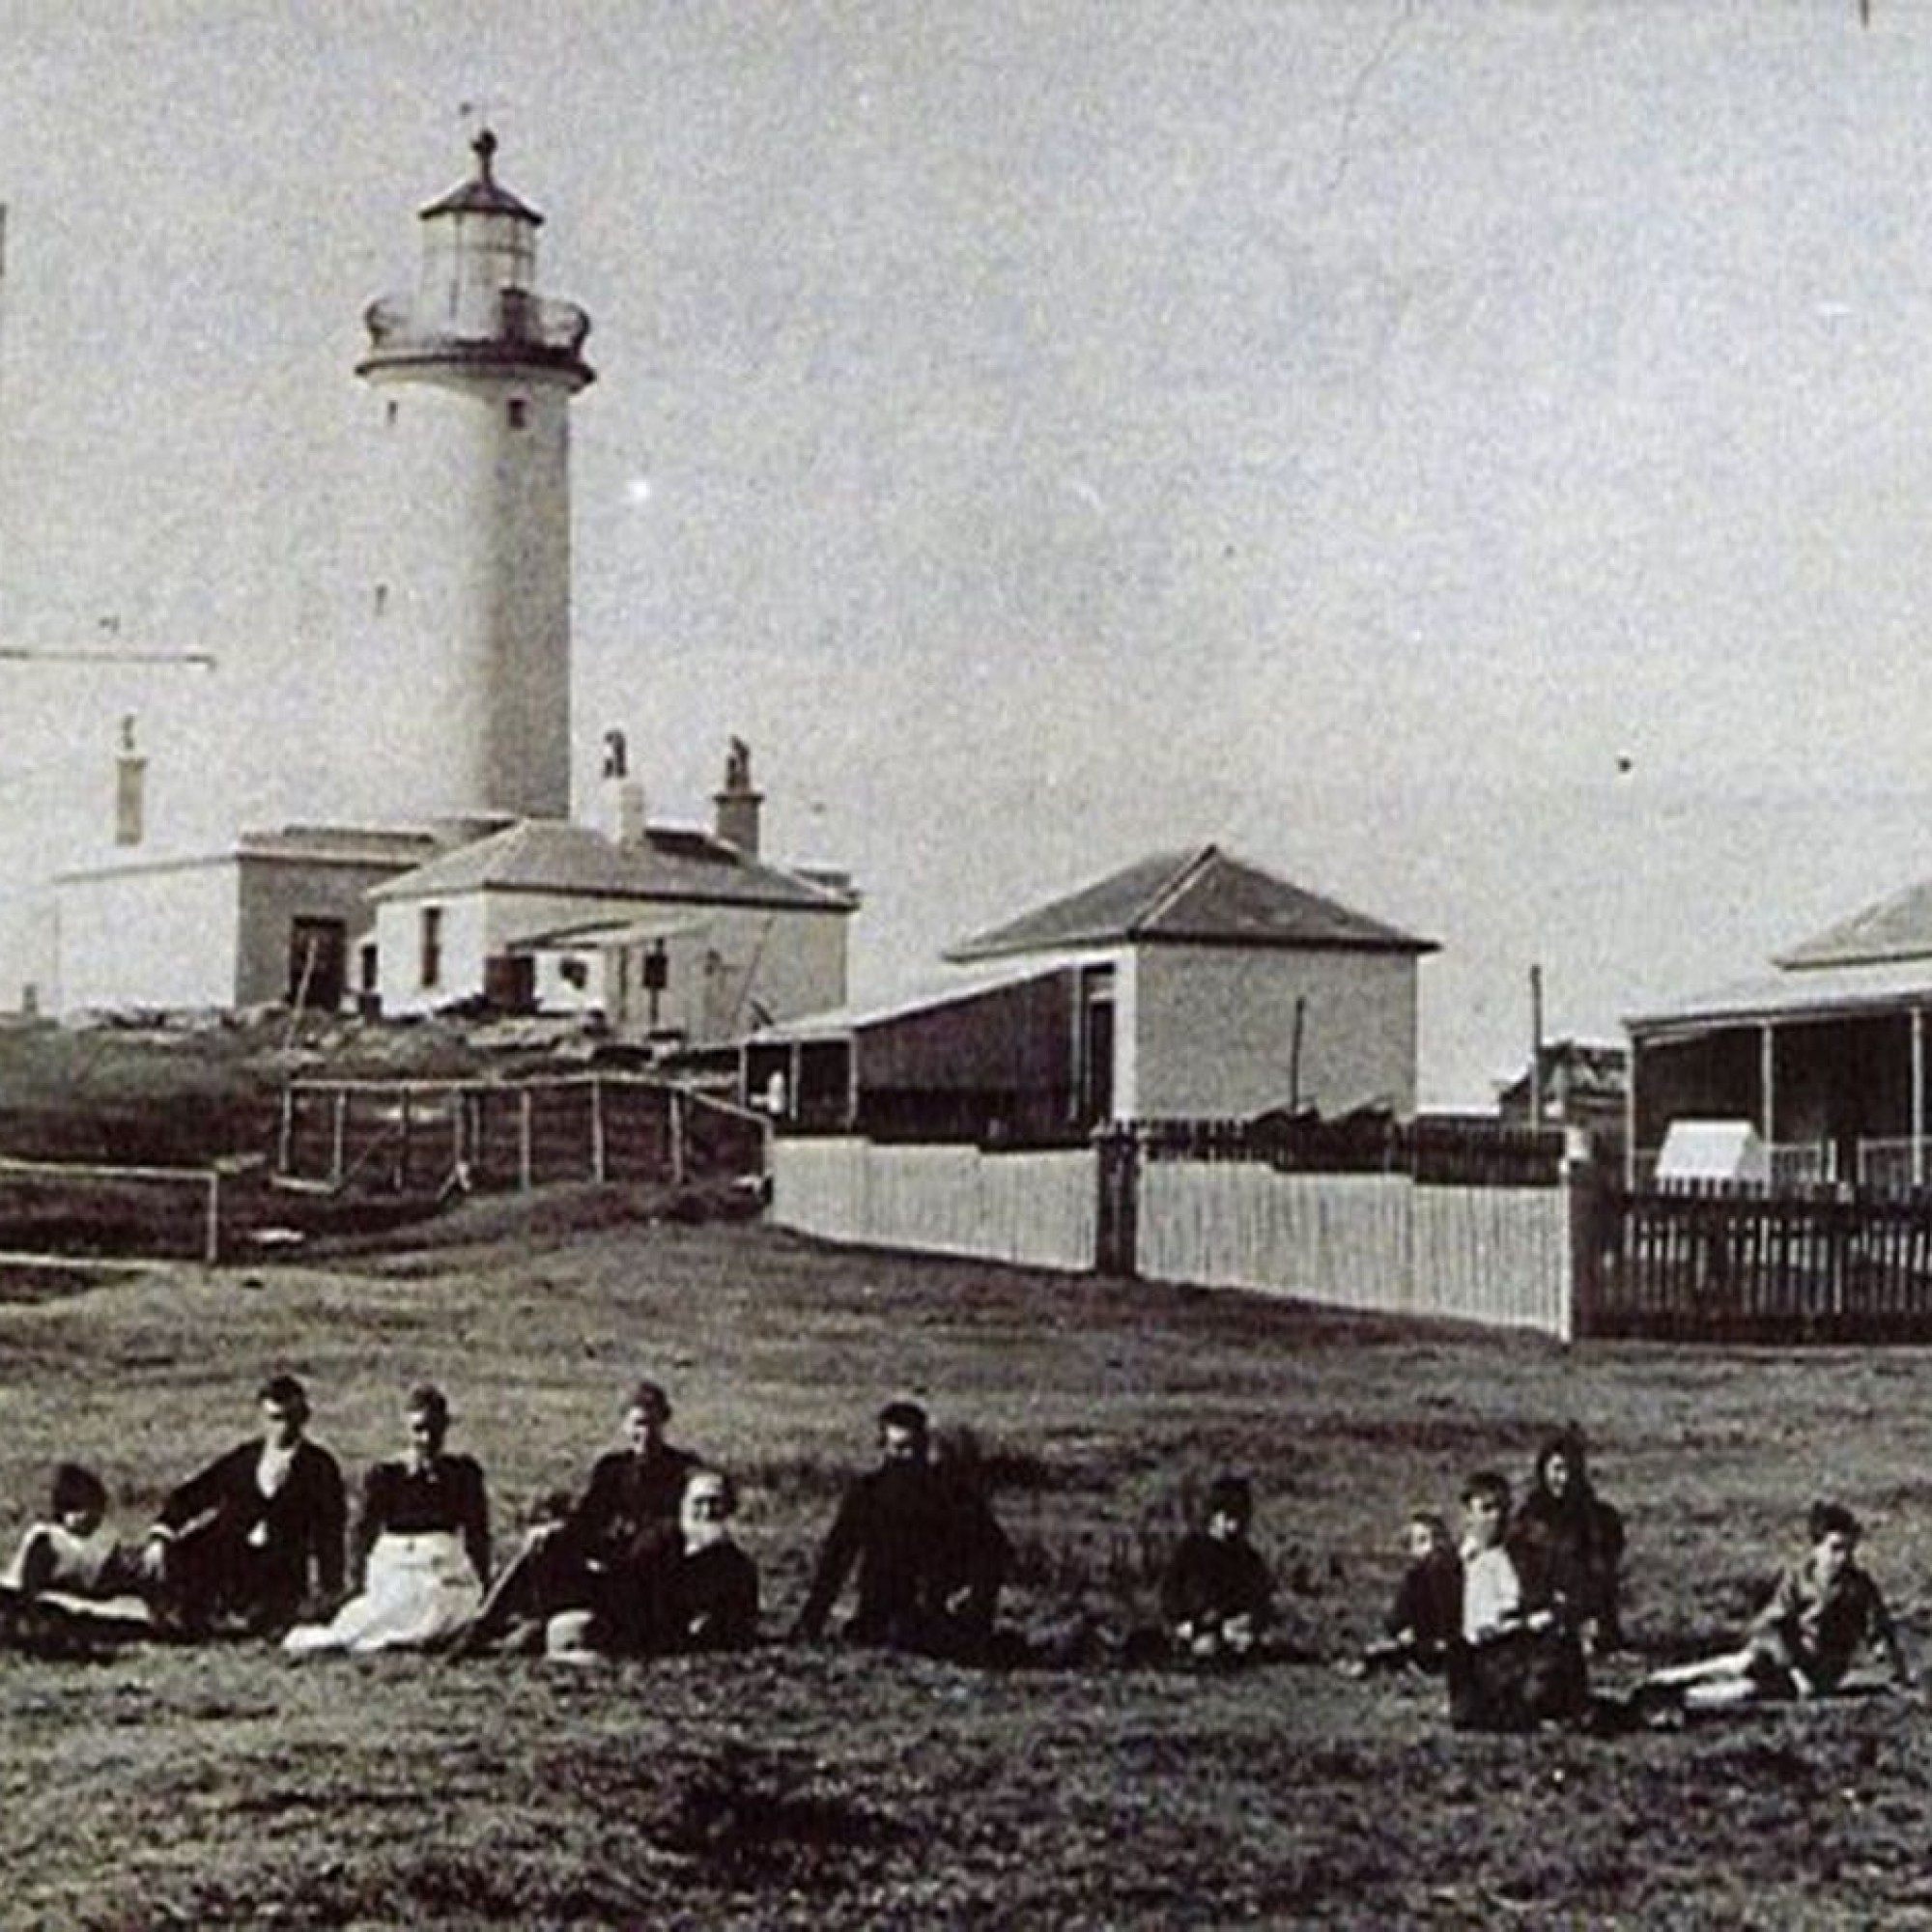 Hier stand das St. George Lighthouse noch in seiner vollen Pracht. Das Foto entstand vermutlich zirka 1877.